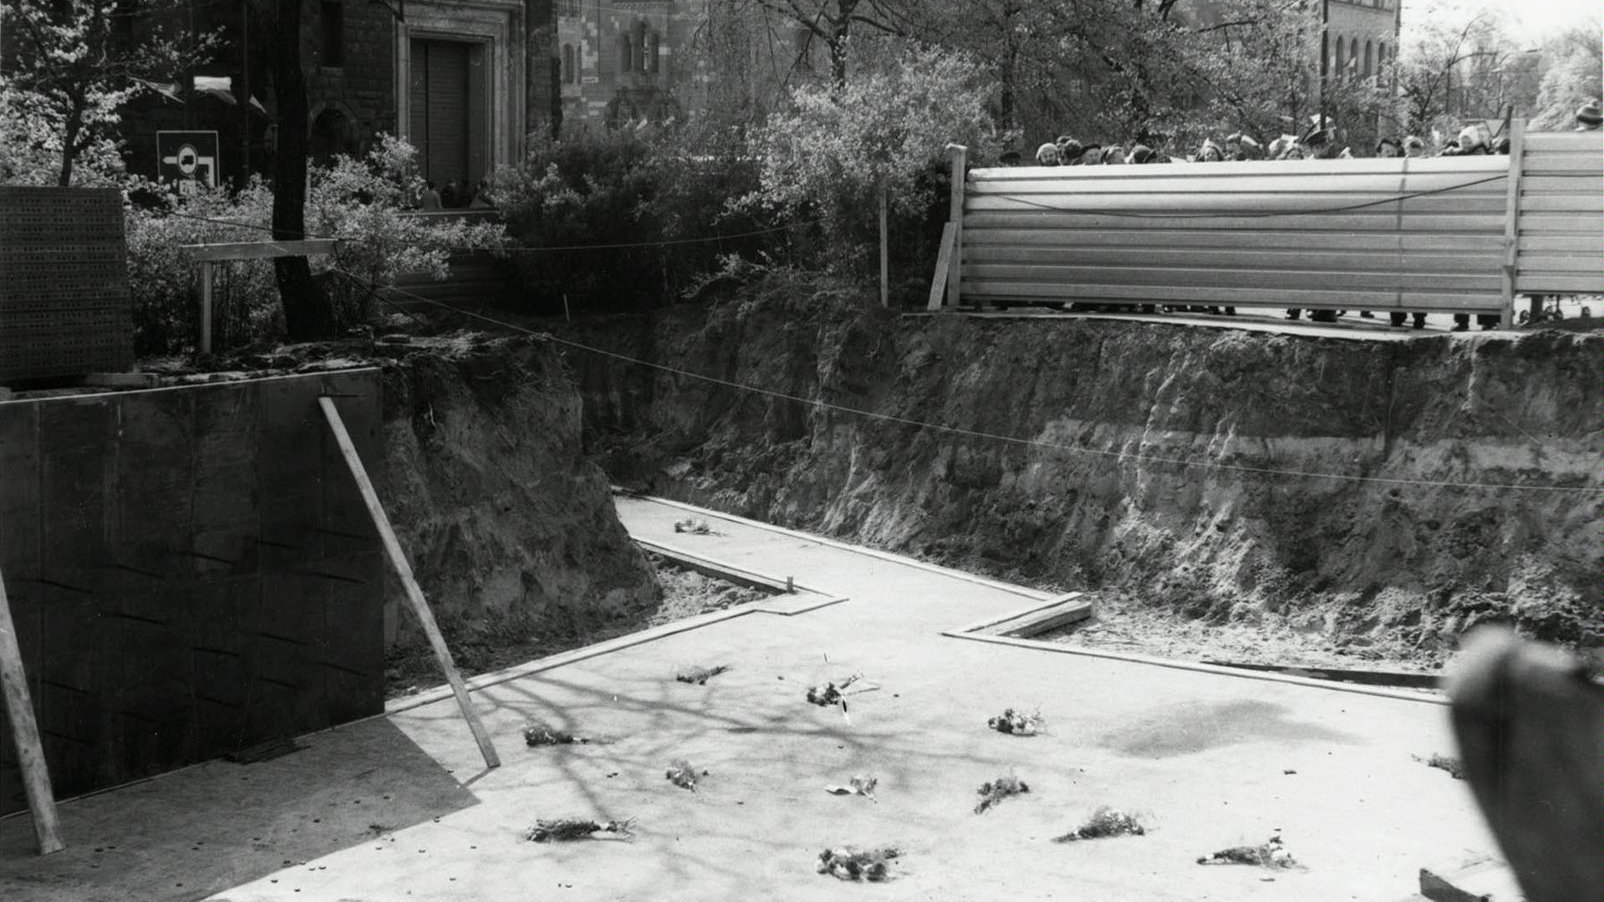 Czarno białe zdjęcie przedstawia wykopany dół. Na dnie znajdują się fundamenty pod pomnik. Zza płotu, który odgradza teren wychylają się mieszkańcy. W tle widać Filharmonię Poznańską.